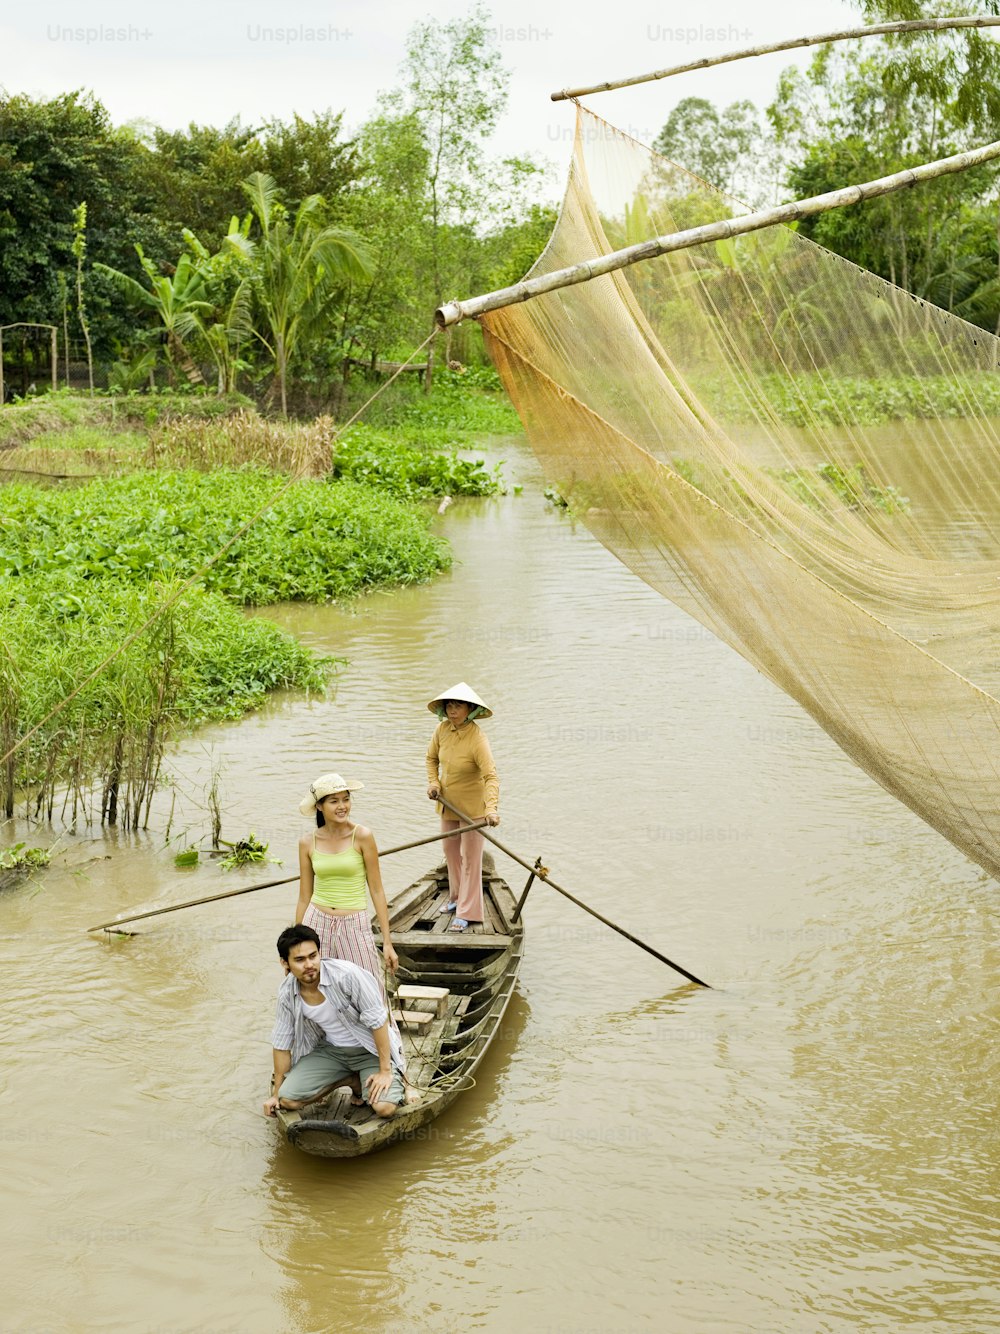 강에서 보트 위에 타고 있는 한 무리�의 사람들